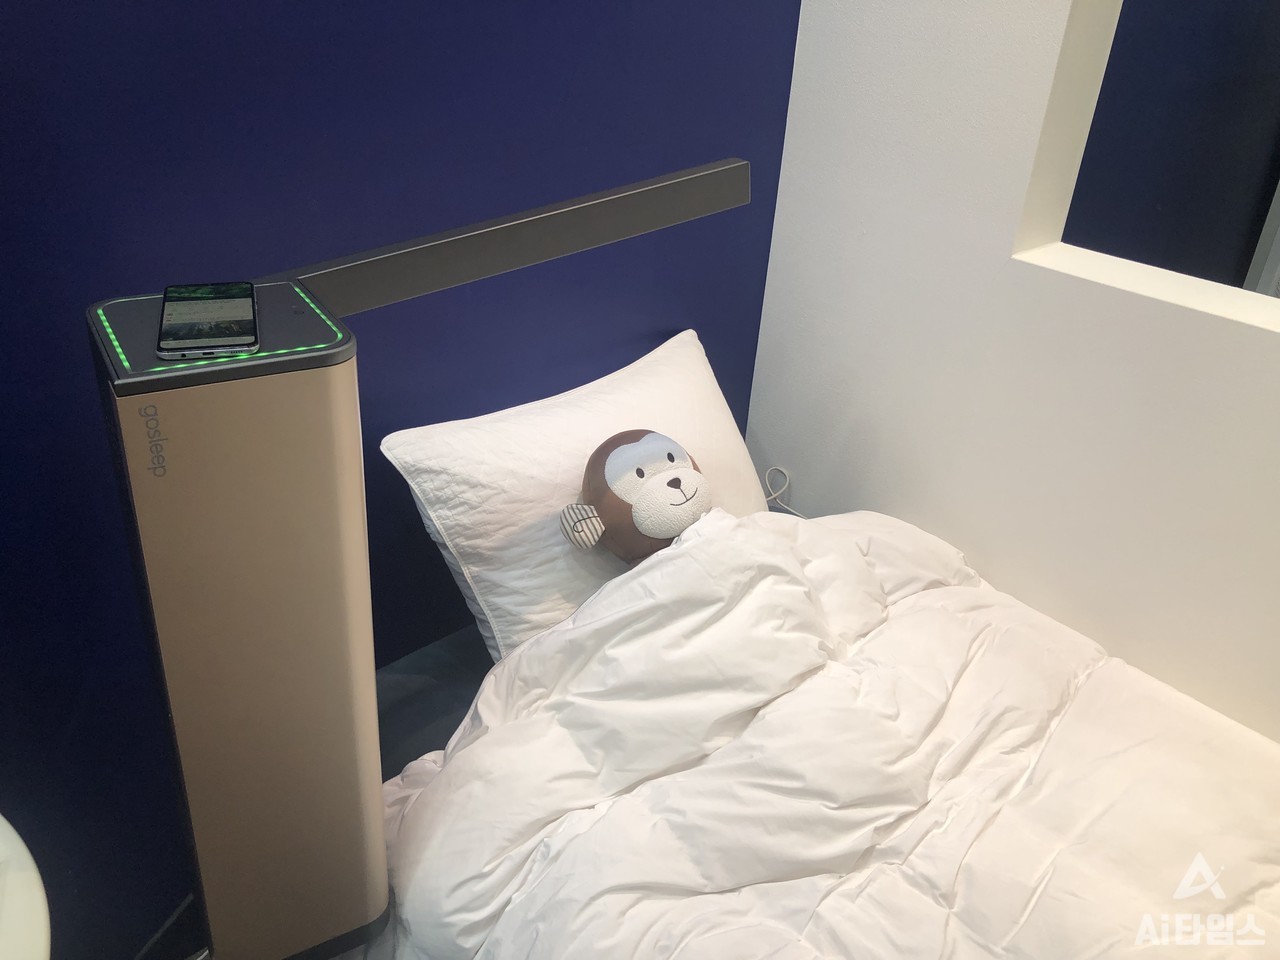 고슬립은 슬립에어를 분사해 수면을 유도하고, AI를 통해 수면 분석을 하는 등 사용자에게 최적의 수면 환경을 제공하기 위해 제작된 솔루션이다. (사진=김동원 기자)